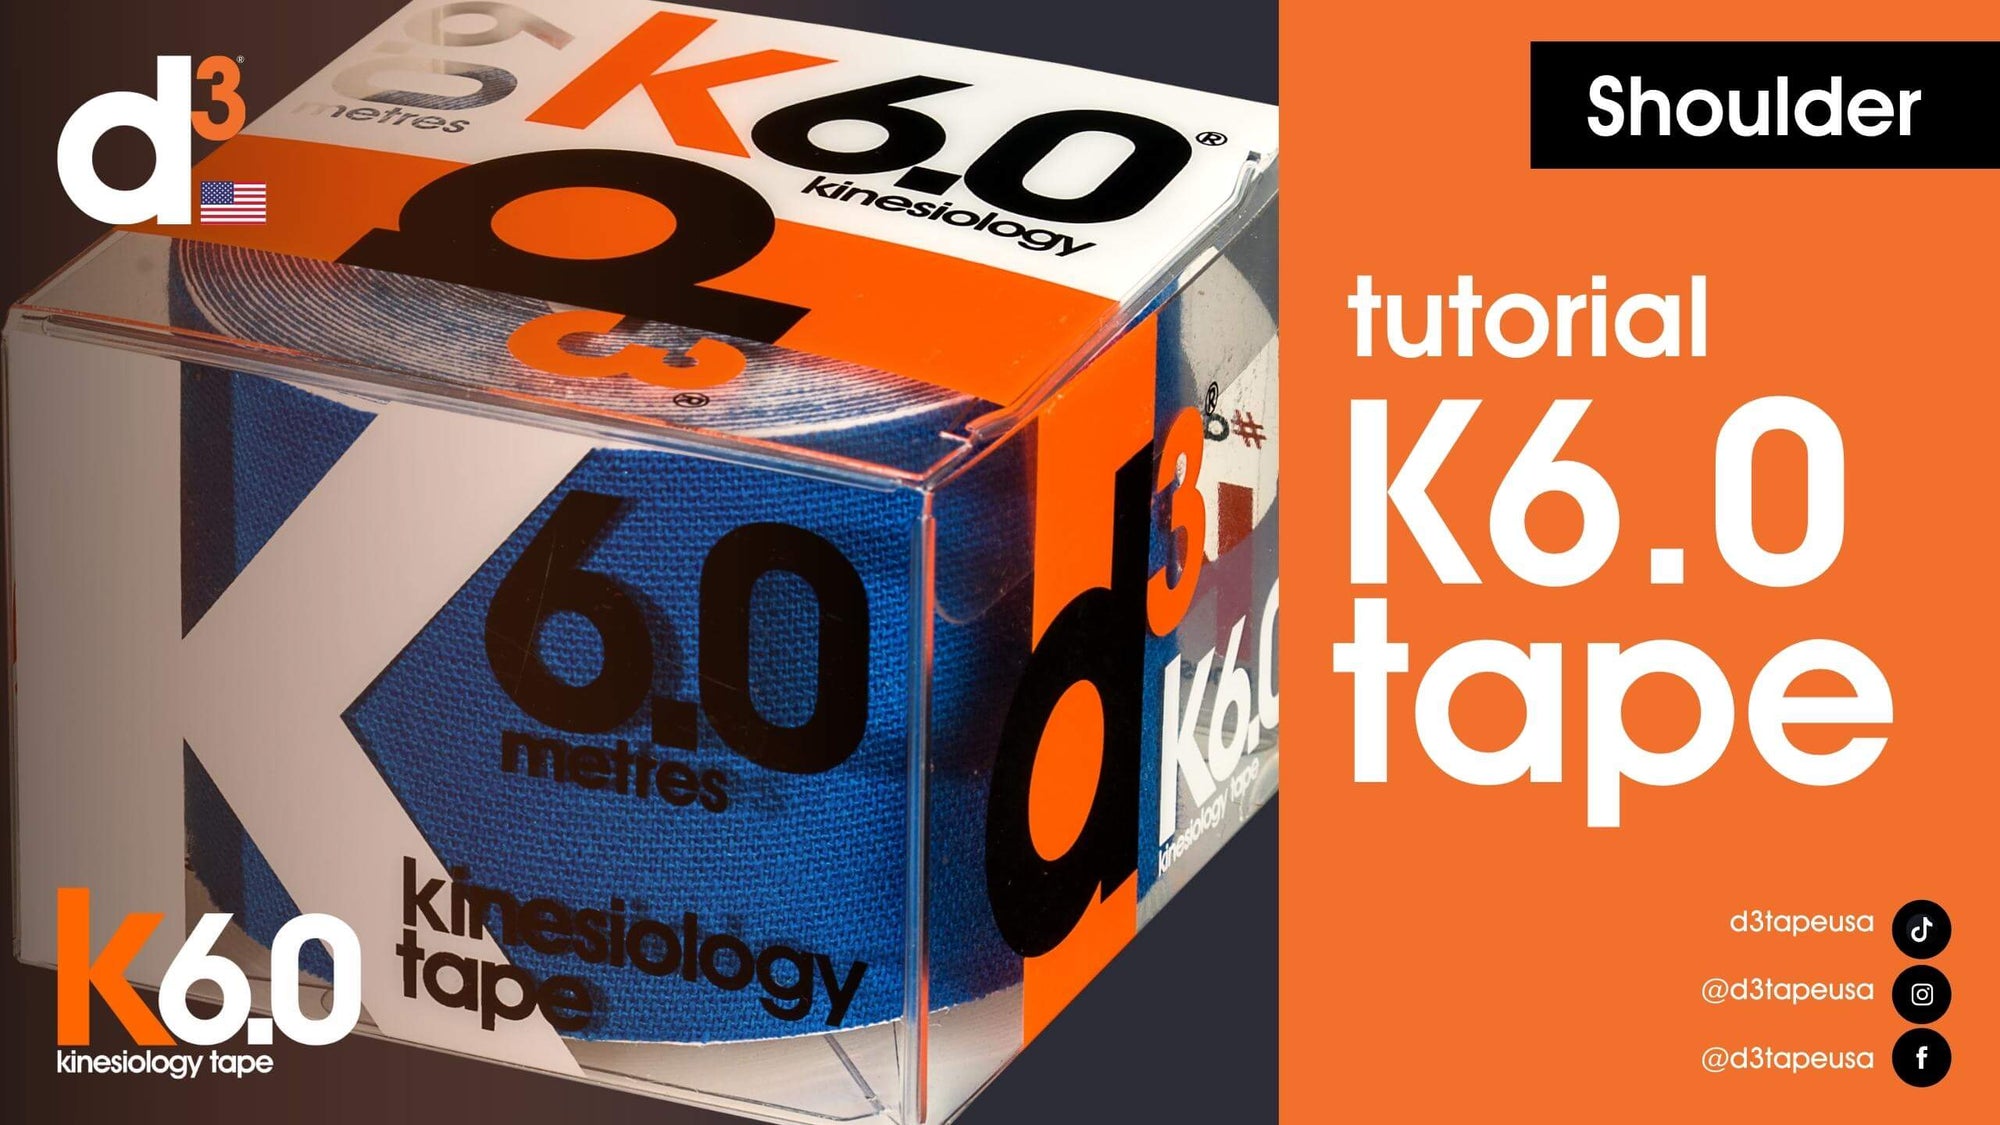 Tutorial - Shoulder - K6.0 Kinesiology Tape